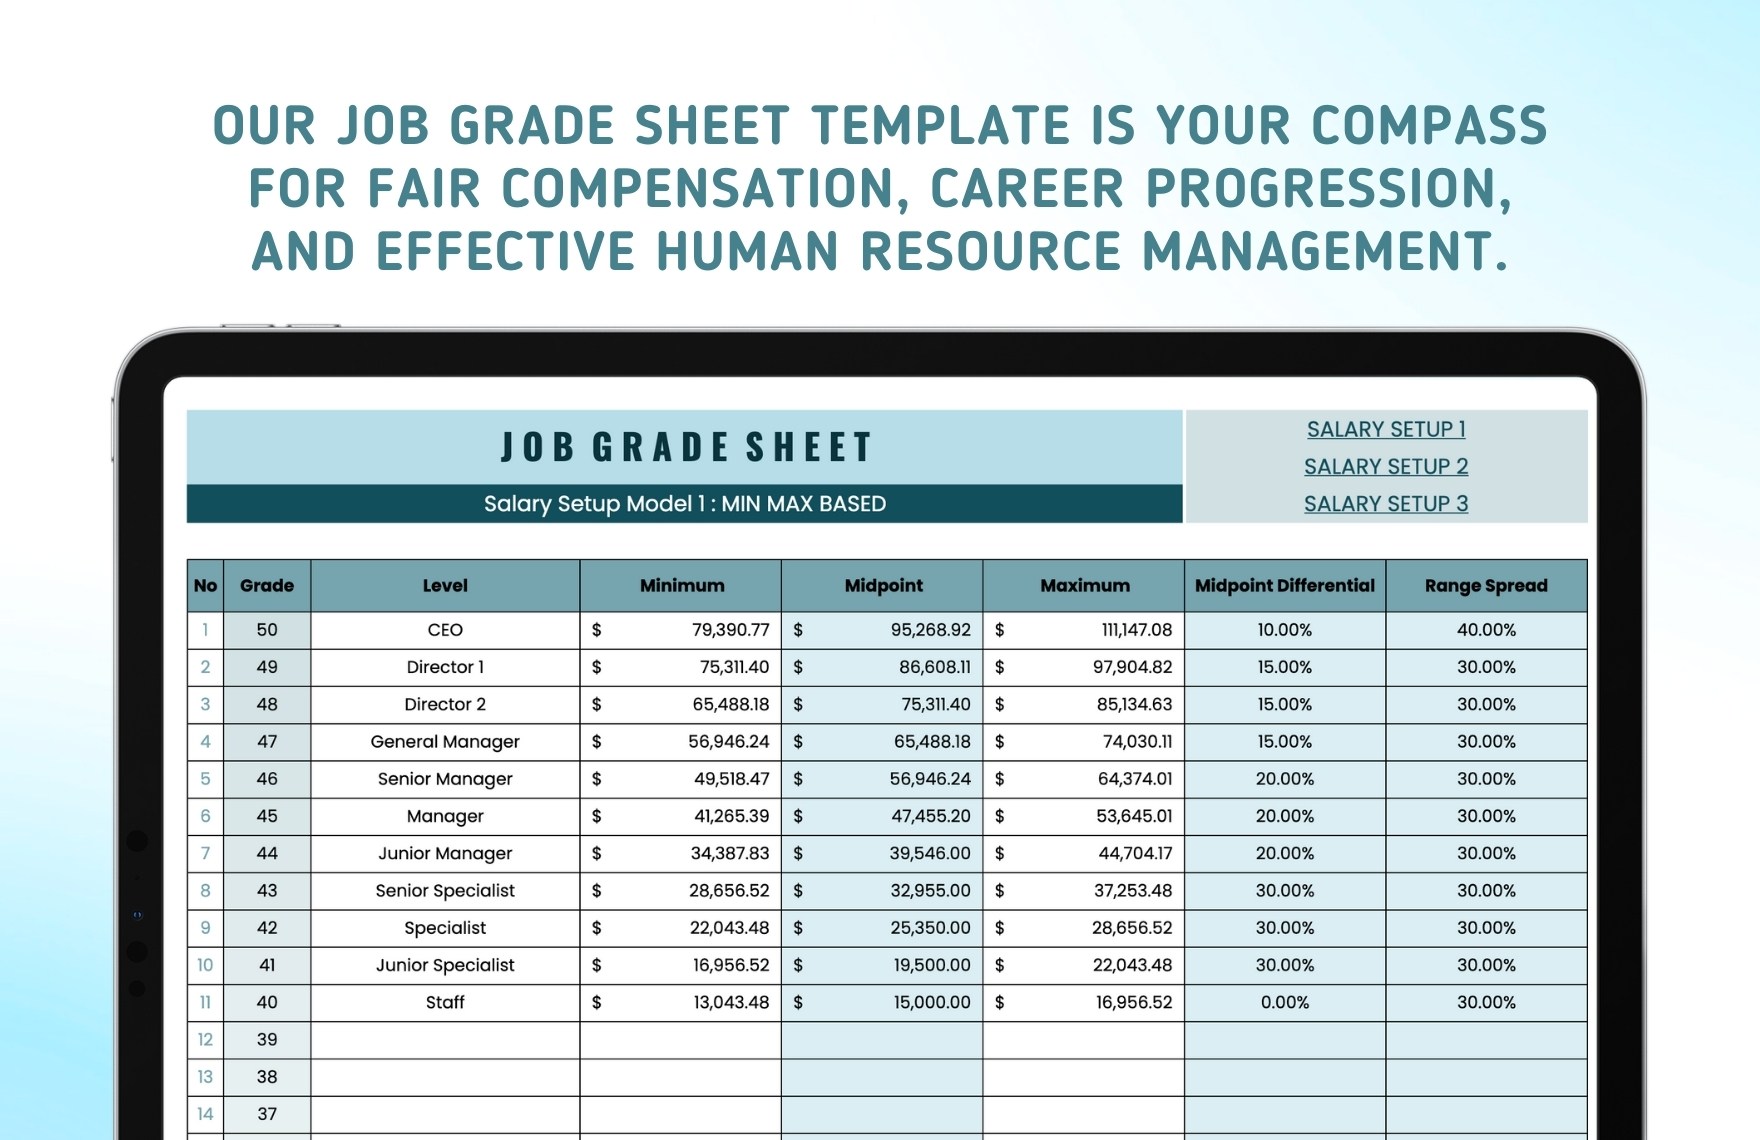 Job Grade Sheet Template